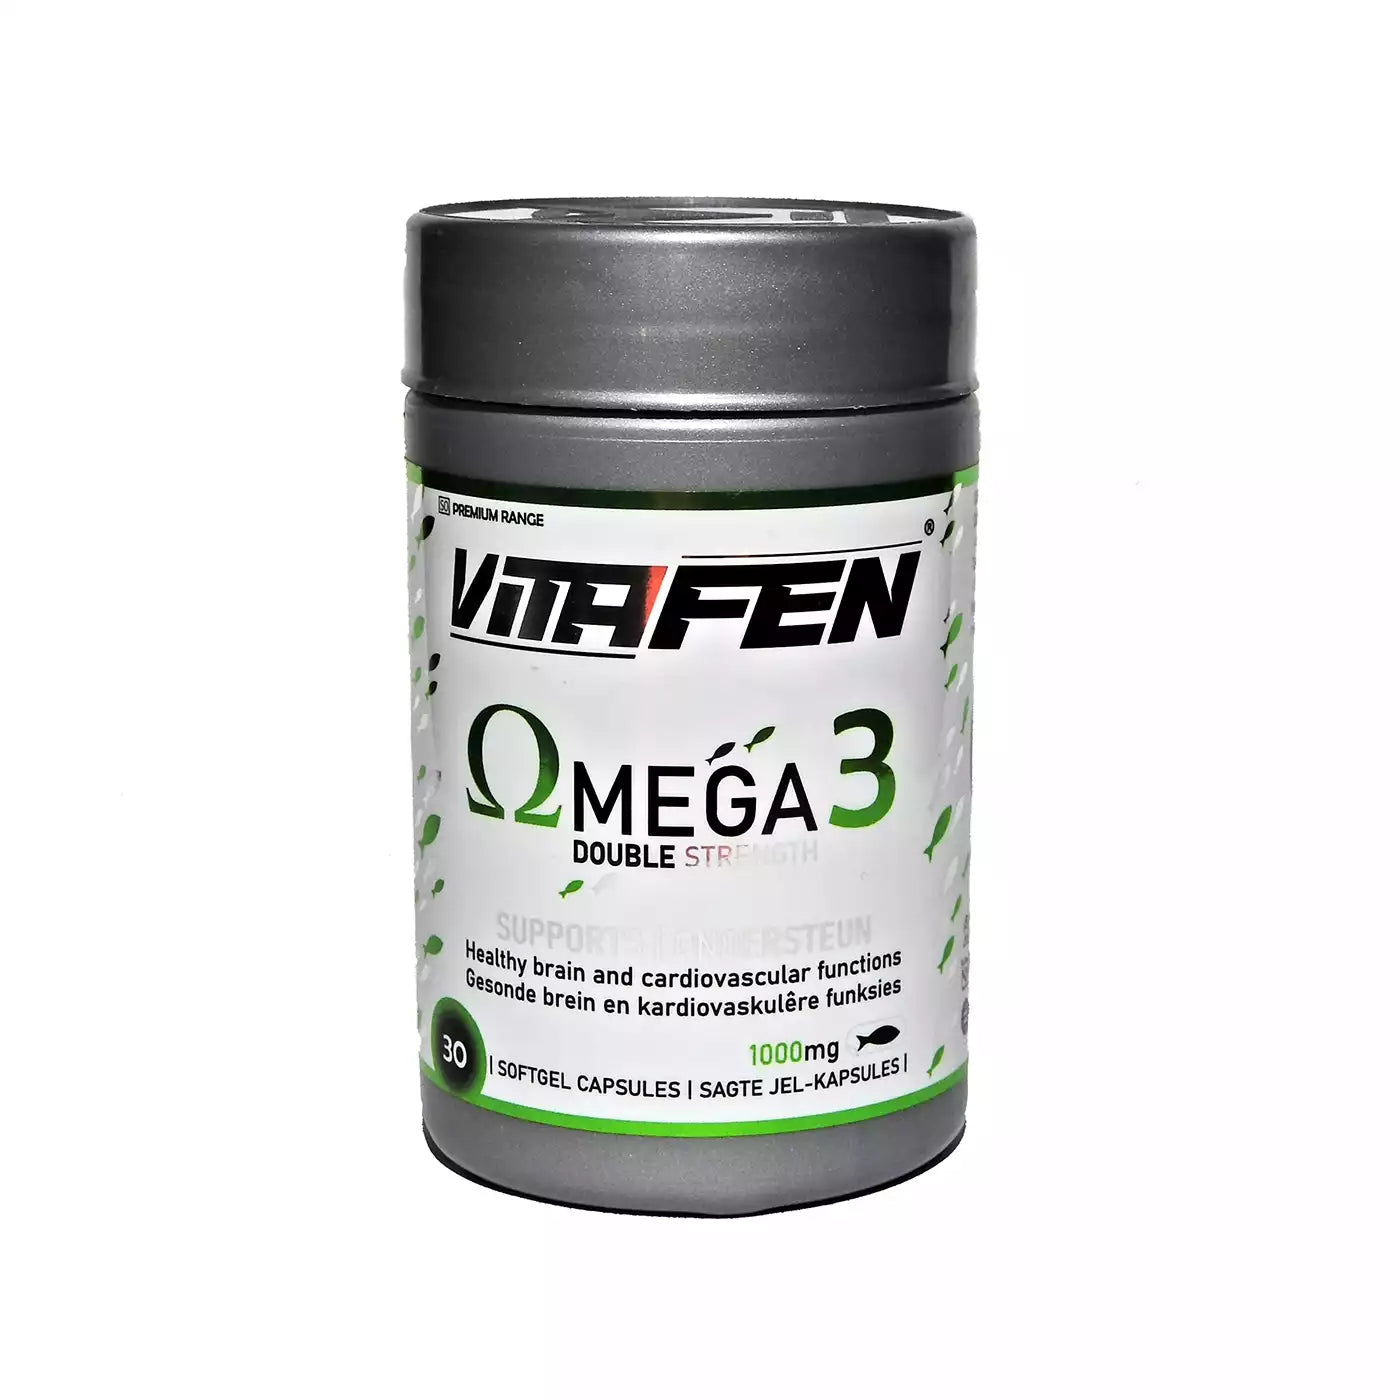 Vitafen Omega 3 Softgels, 30's